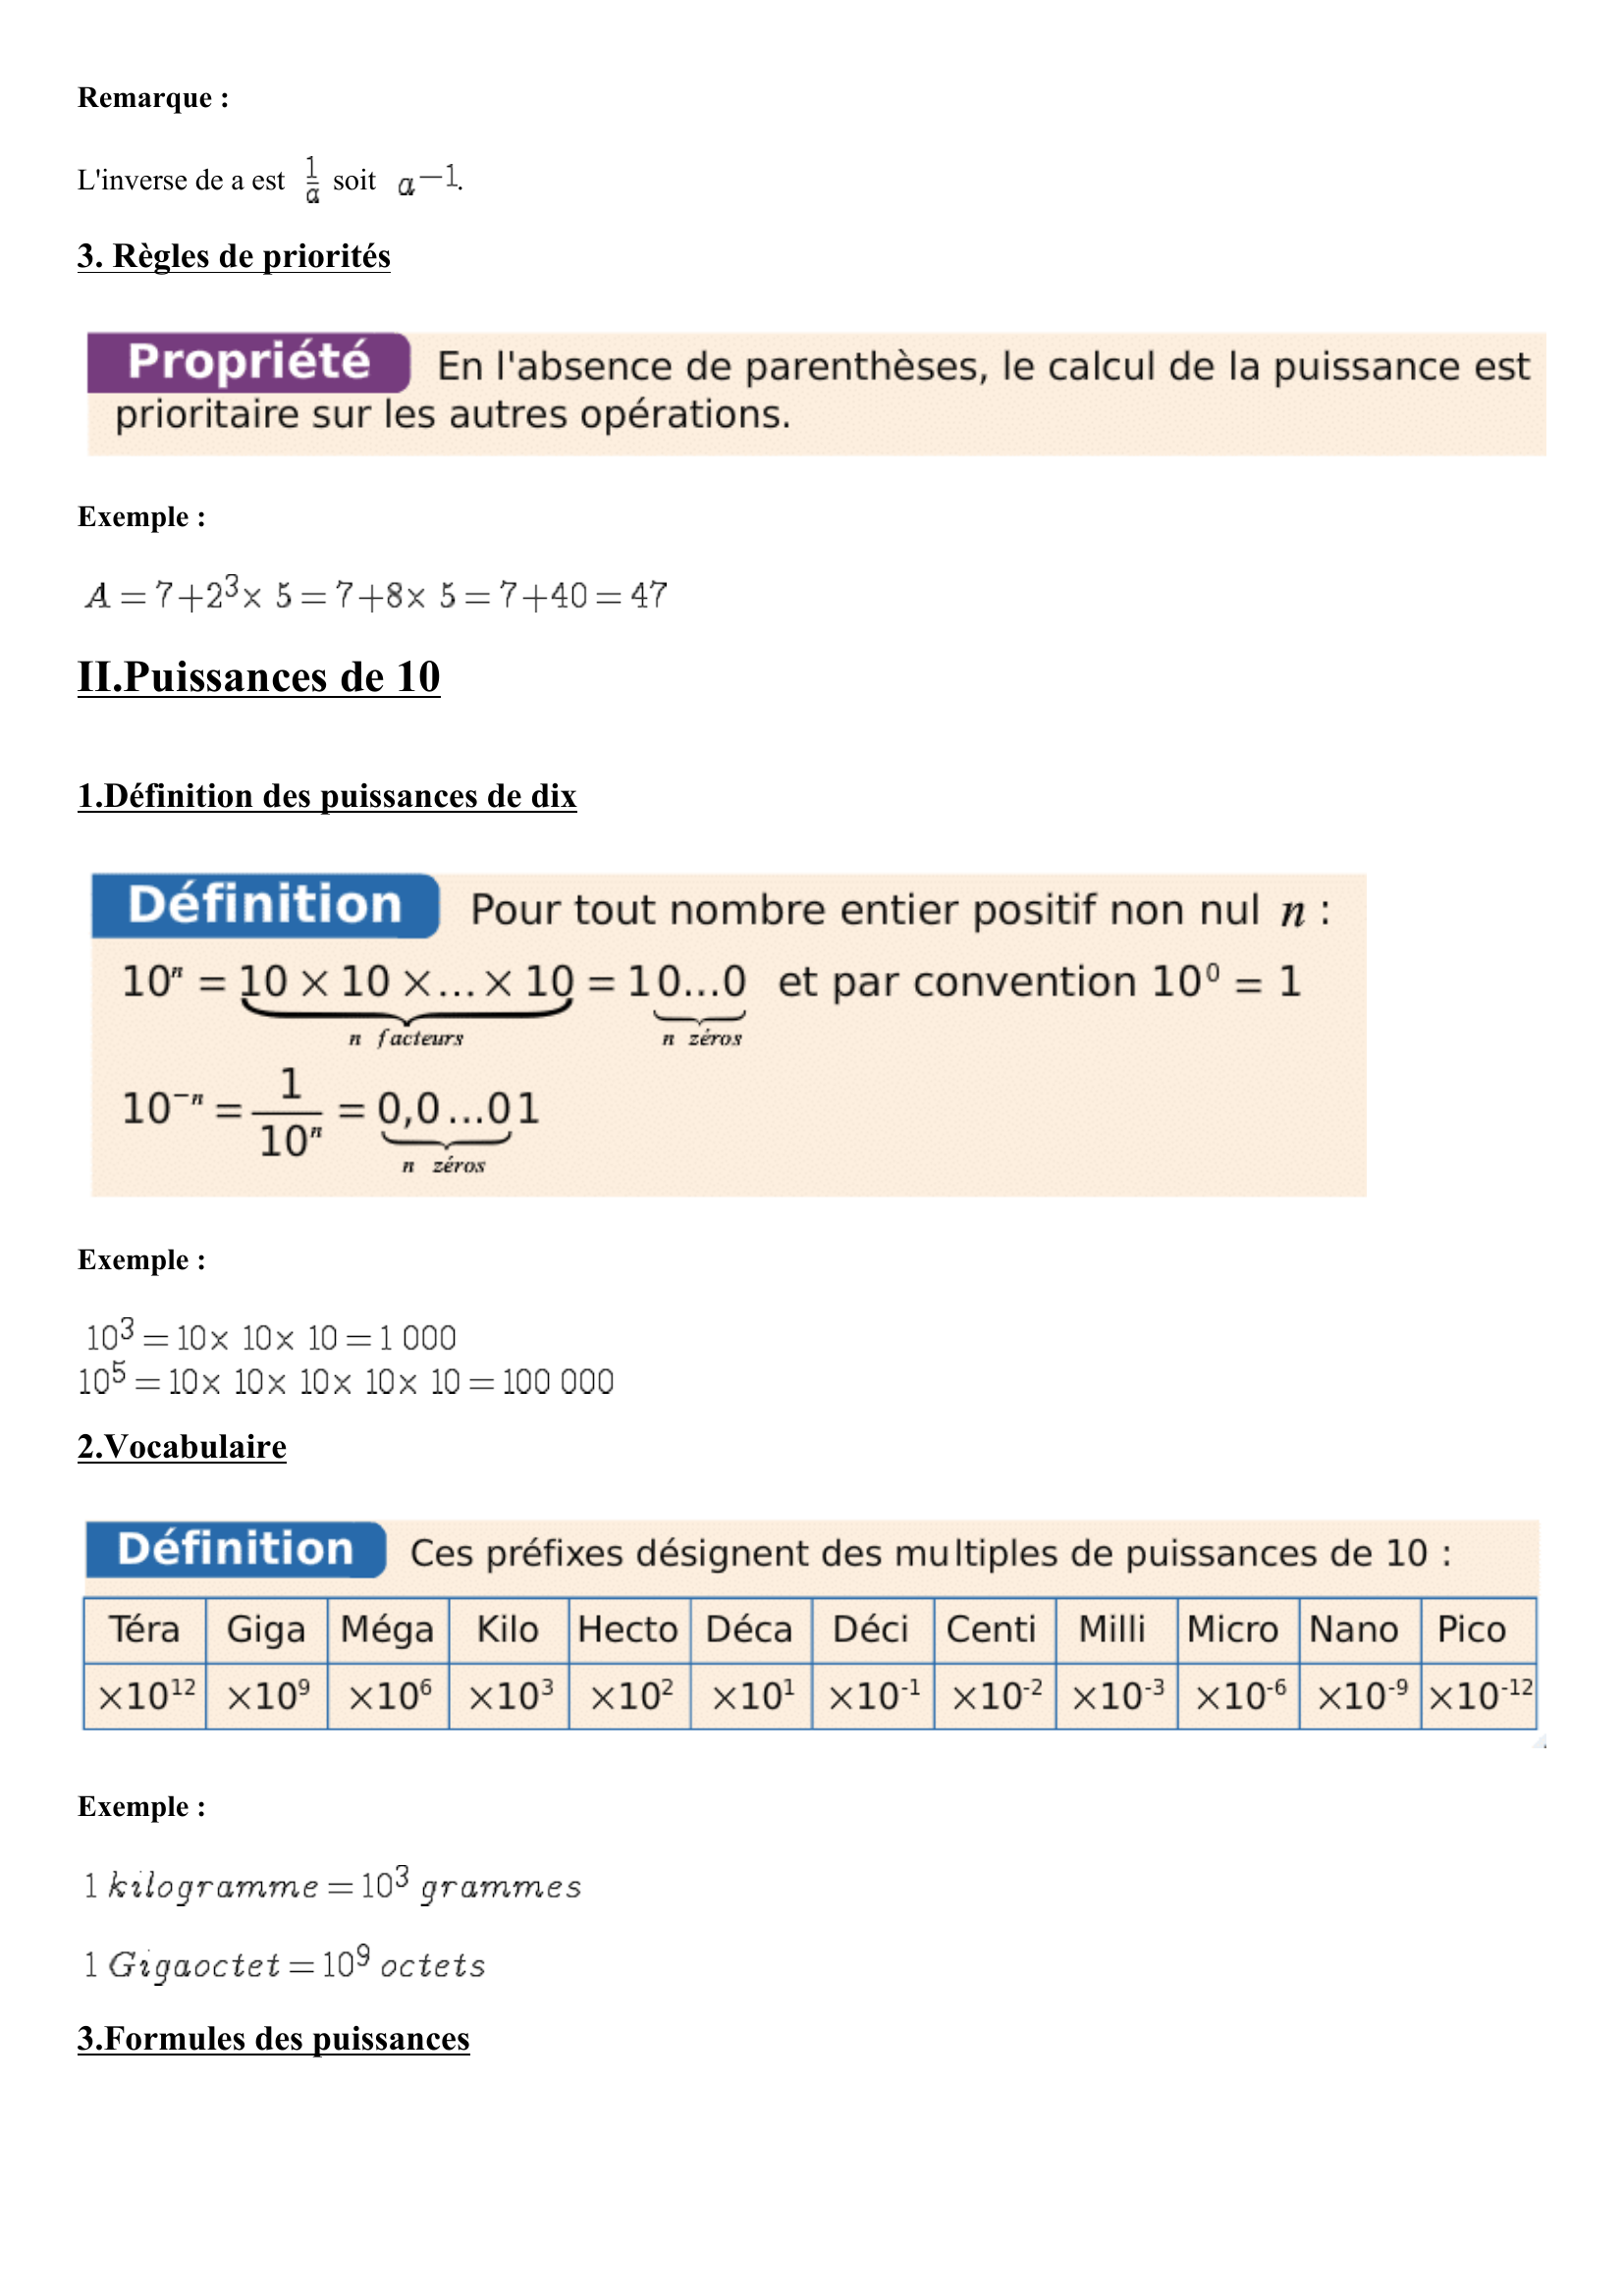 Prévisualisation du document Cours maths quatrième (4ème) - Puissances : cours de maths en quatrième